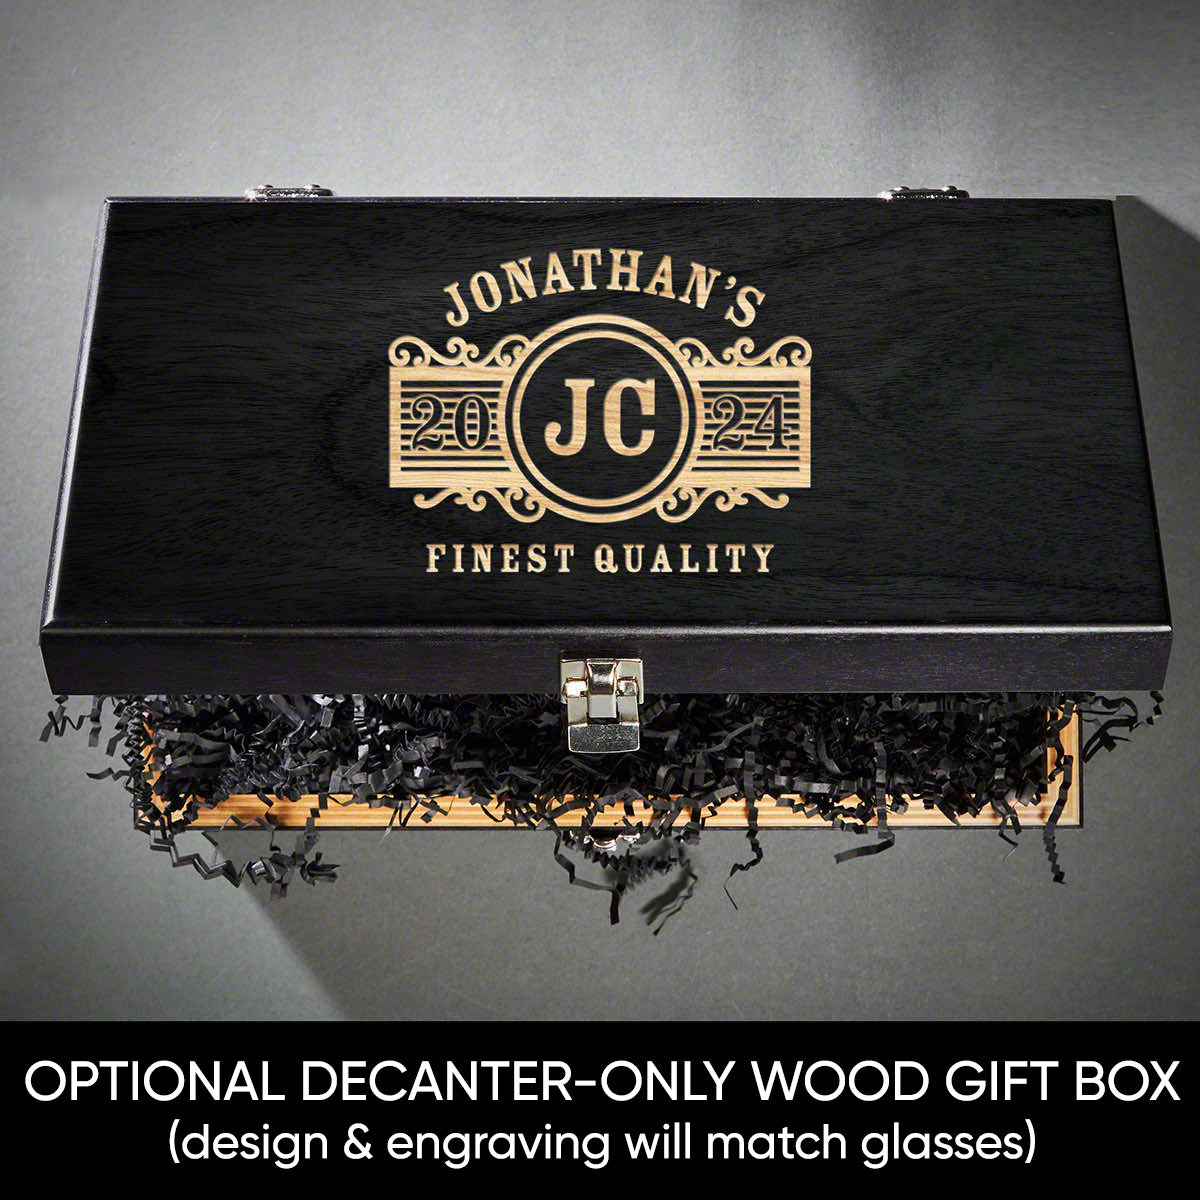 Wooden Keepsake Box Personalized  - Large Black